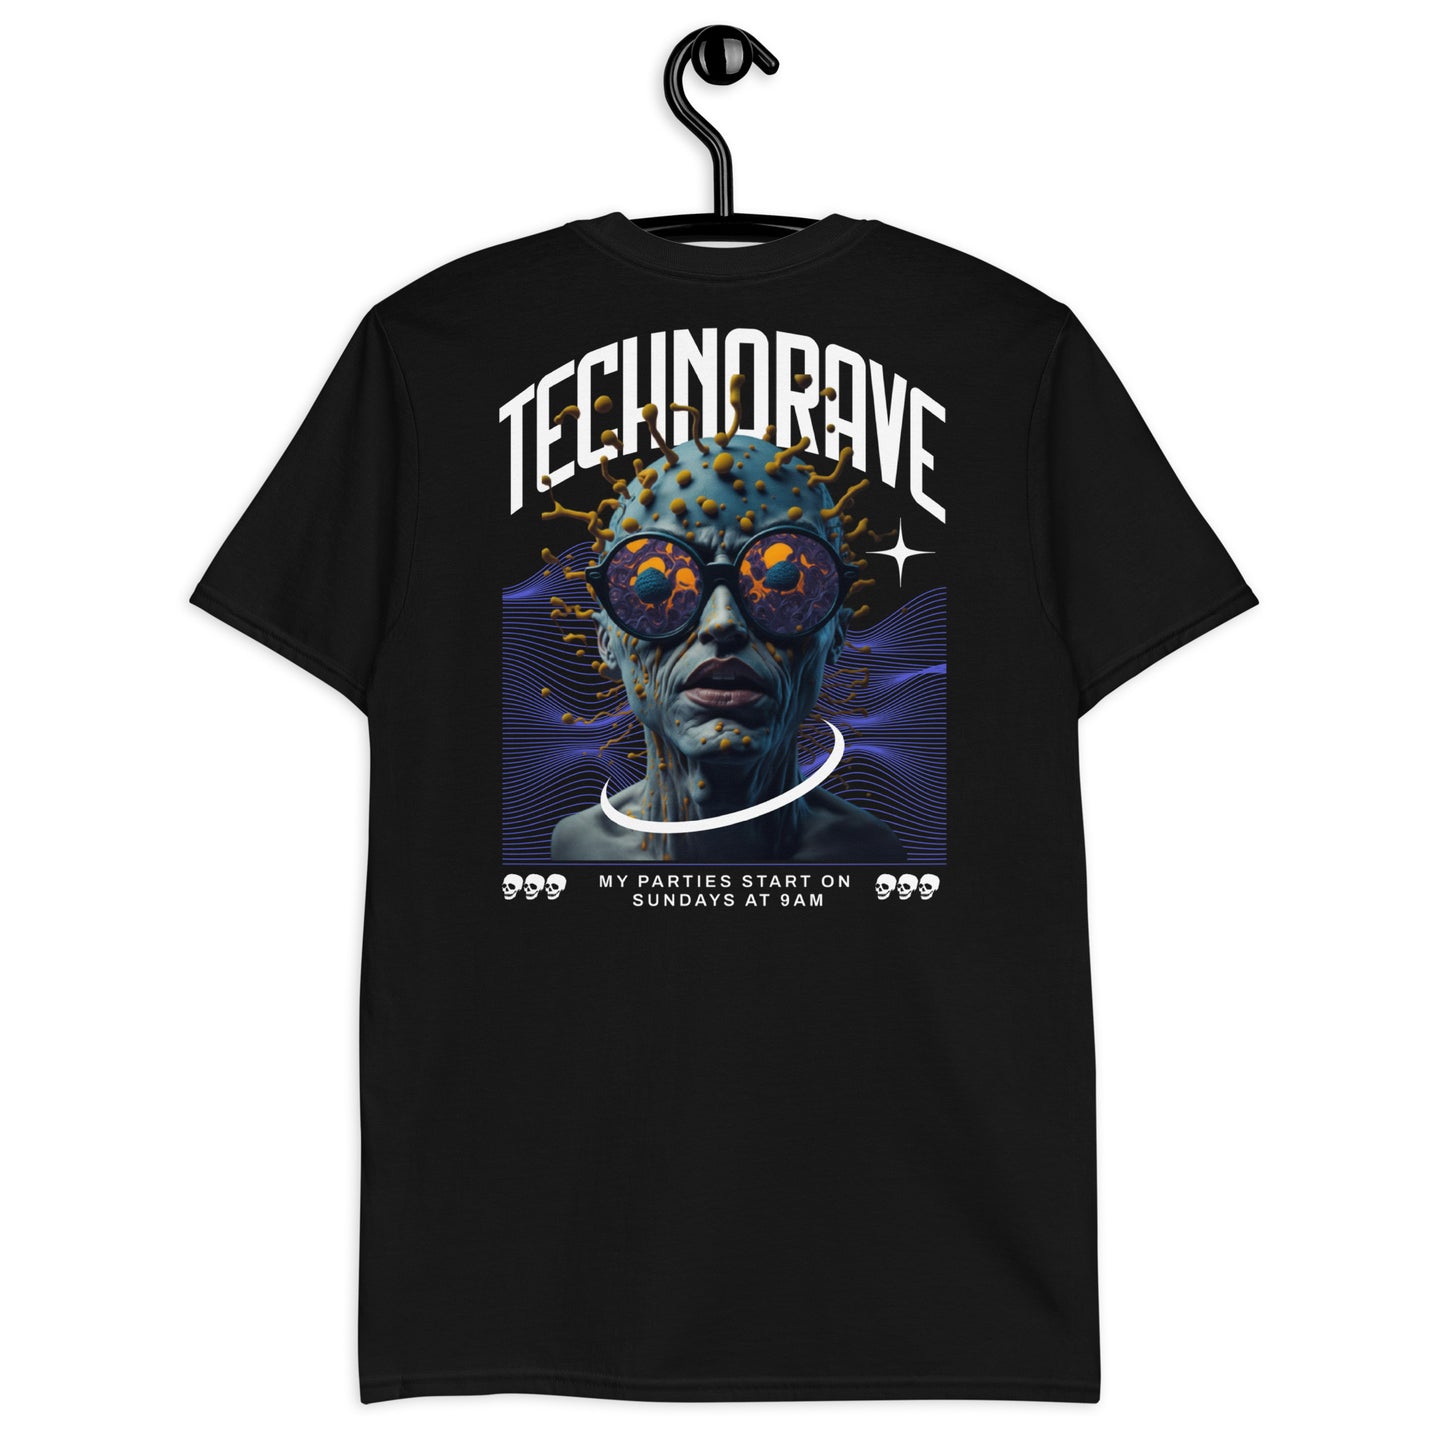 Technorave -  Unisex T-Shirt